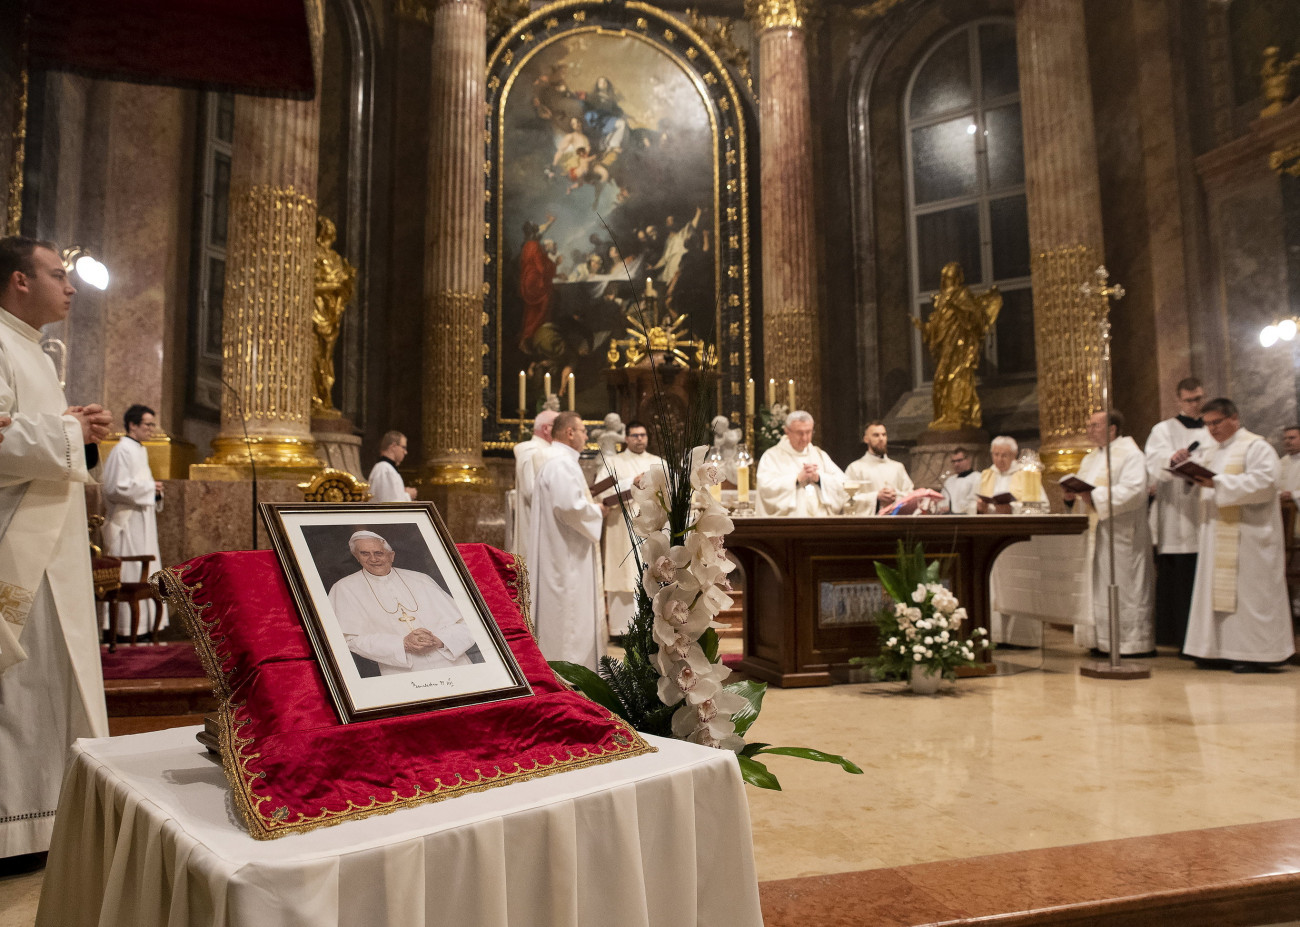 Győr, 2023. január 2.
Veres András győri megyés püspök, a Magyar Katolikus Püspöki Konferencia (MKPK) elnöke (j8) gyászmisét mutat be XVI. Benedek emeritus pápa emlékére a győri Nagyboldogasszony-székesegyházban 2023. január 2-án. A 95 esztendős emeritus pápa, aki 2005 és 2013 között volt a római katolikus egyház feje, 2022. december 31-én hunyt el. XVI. Benedeket, polgári nevén Joseph Ratzingert január 5-én helyezik örök nyugalomra a Szent Péter-bazilika kriptájában.
MTI/Krizsán Csaba